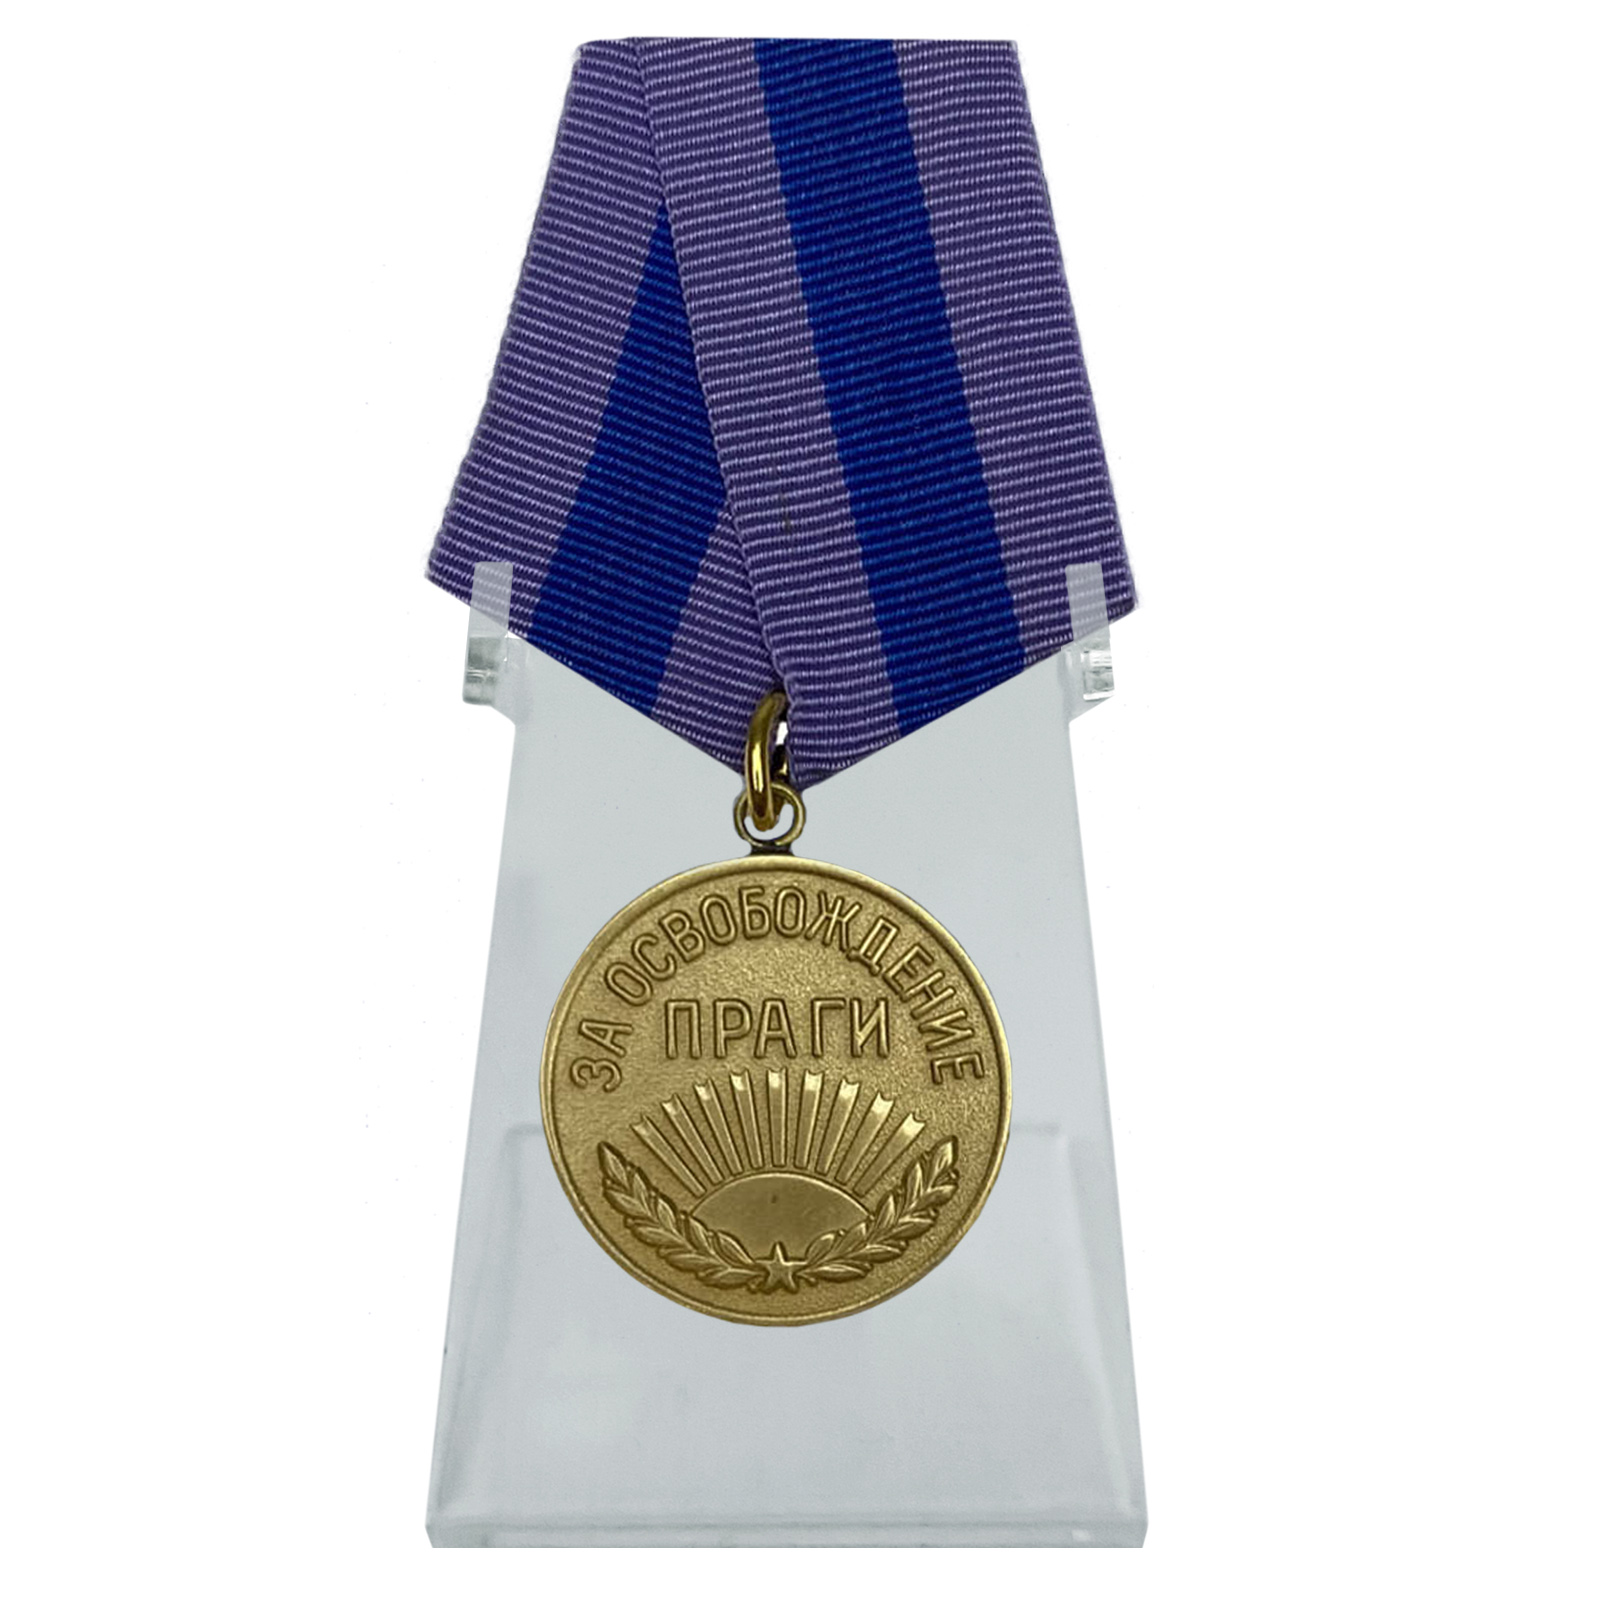 Медаль "За освобождение Праги" на подставке